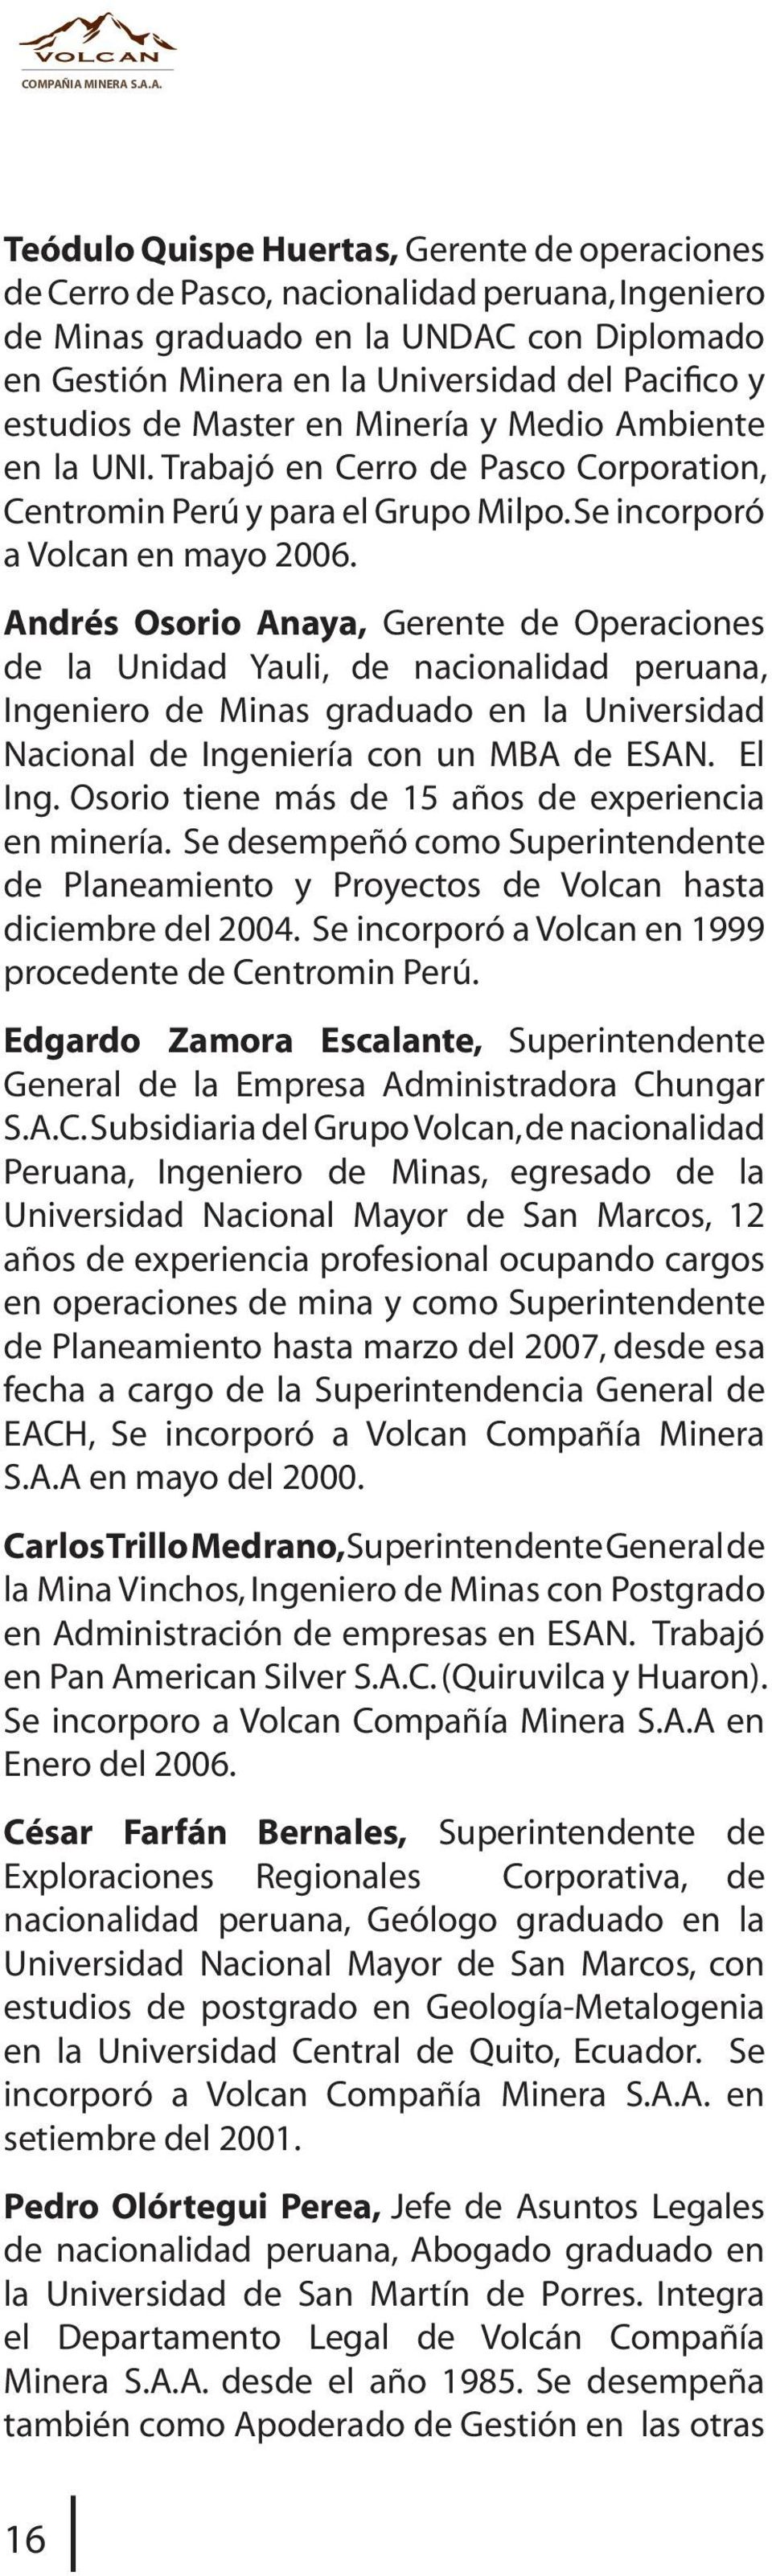 Pacifico y estudios de Master en Minería y Medio Ambiente en la UNI. Trabajó en Cerro de Pasco Corporation, Centromin Perú y para el Grupo Milpo. Se incorporó a Volcan en mayo 2006.